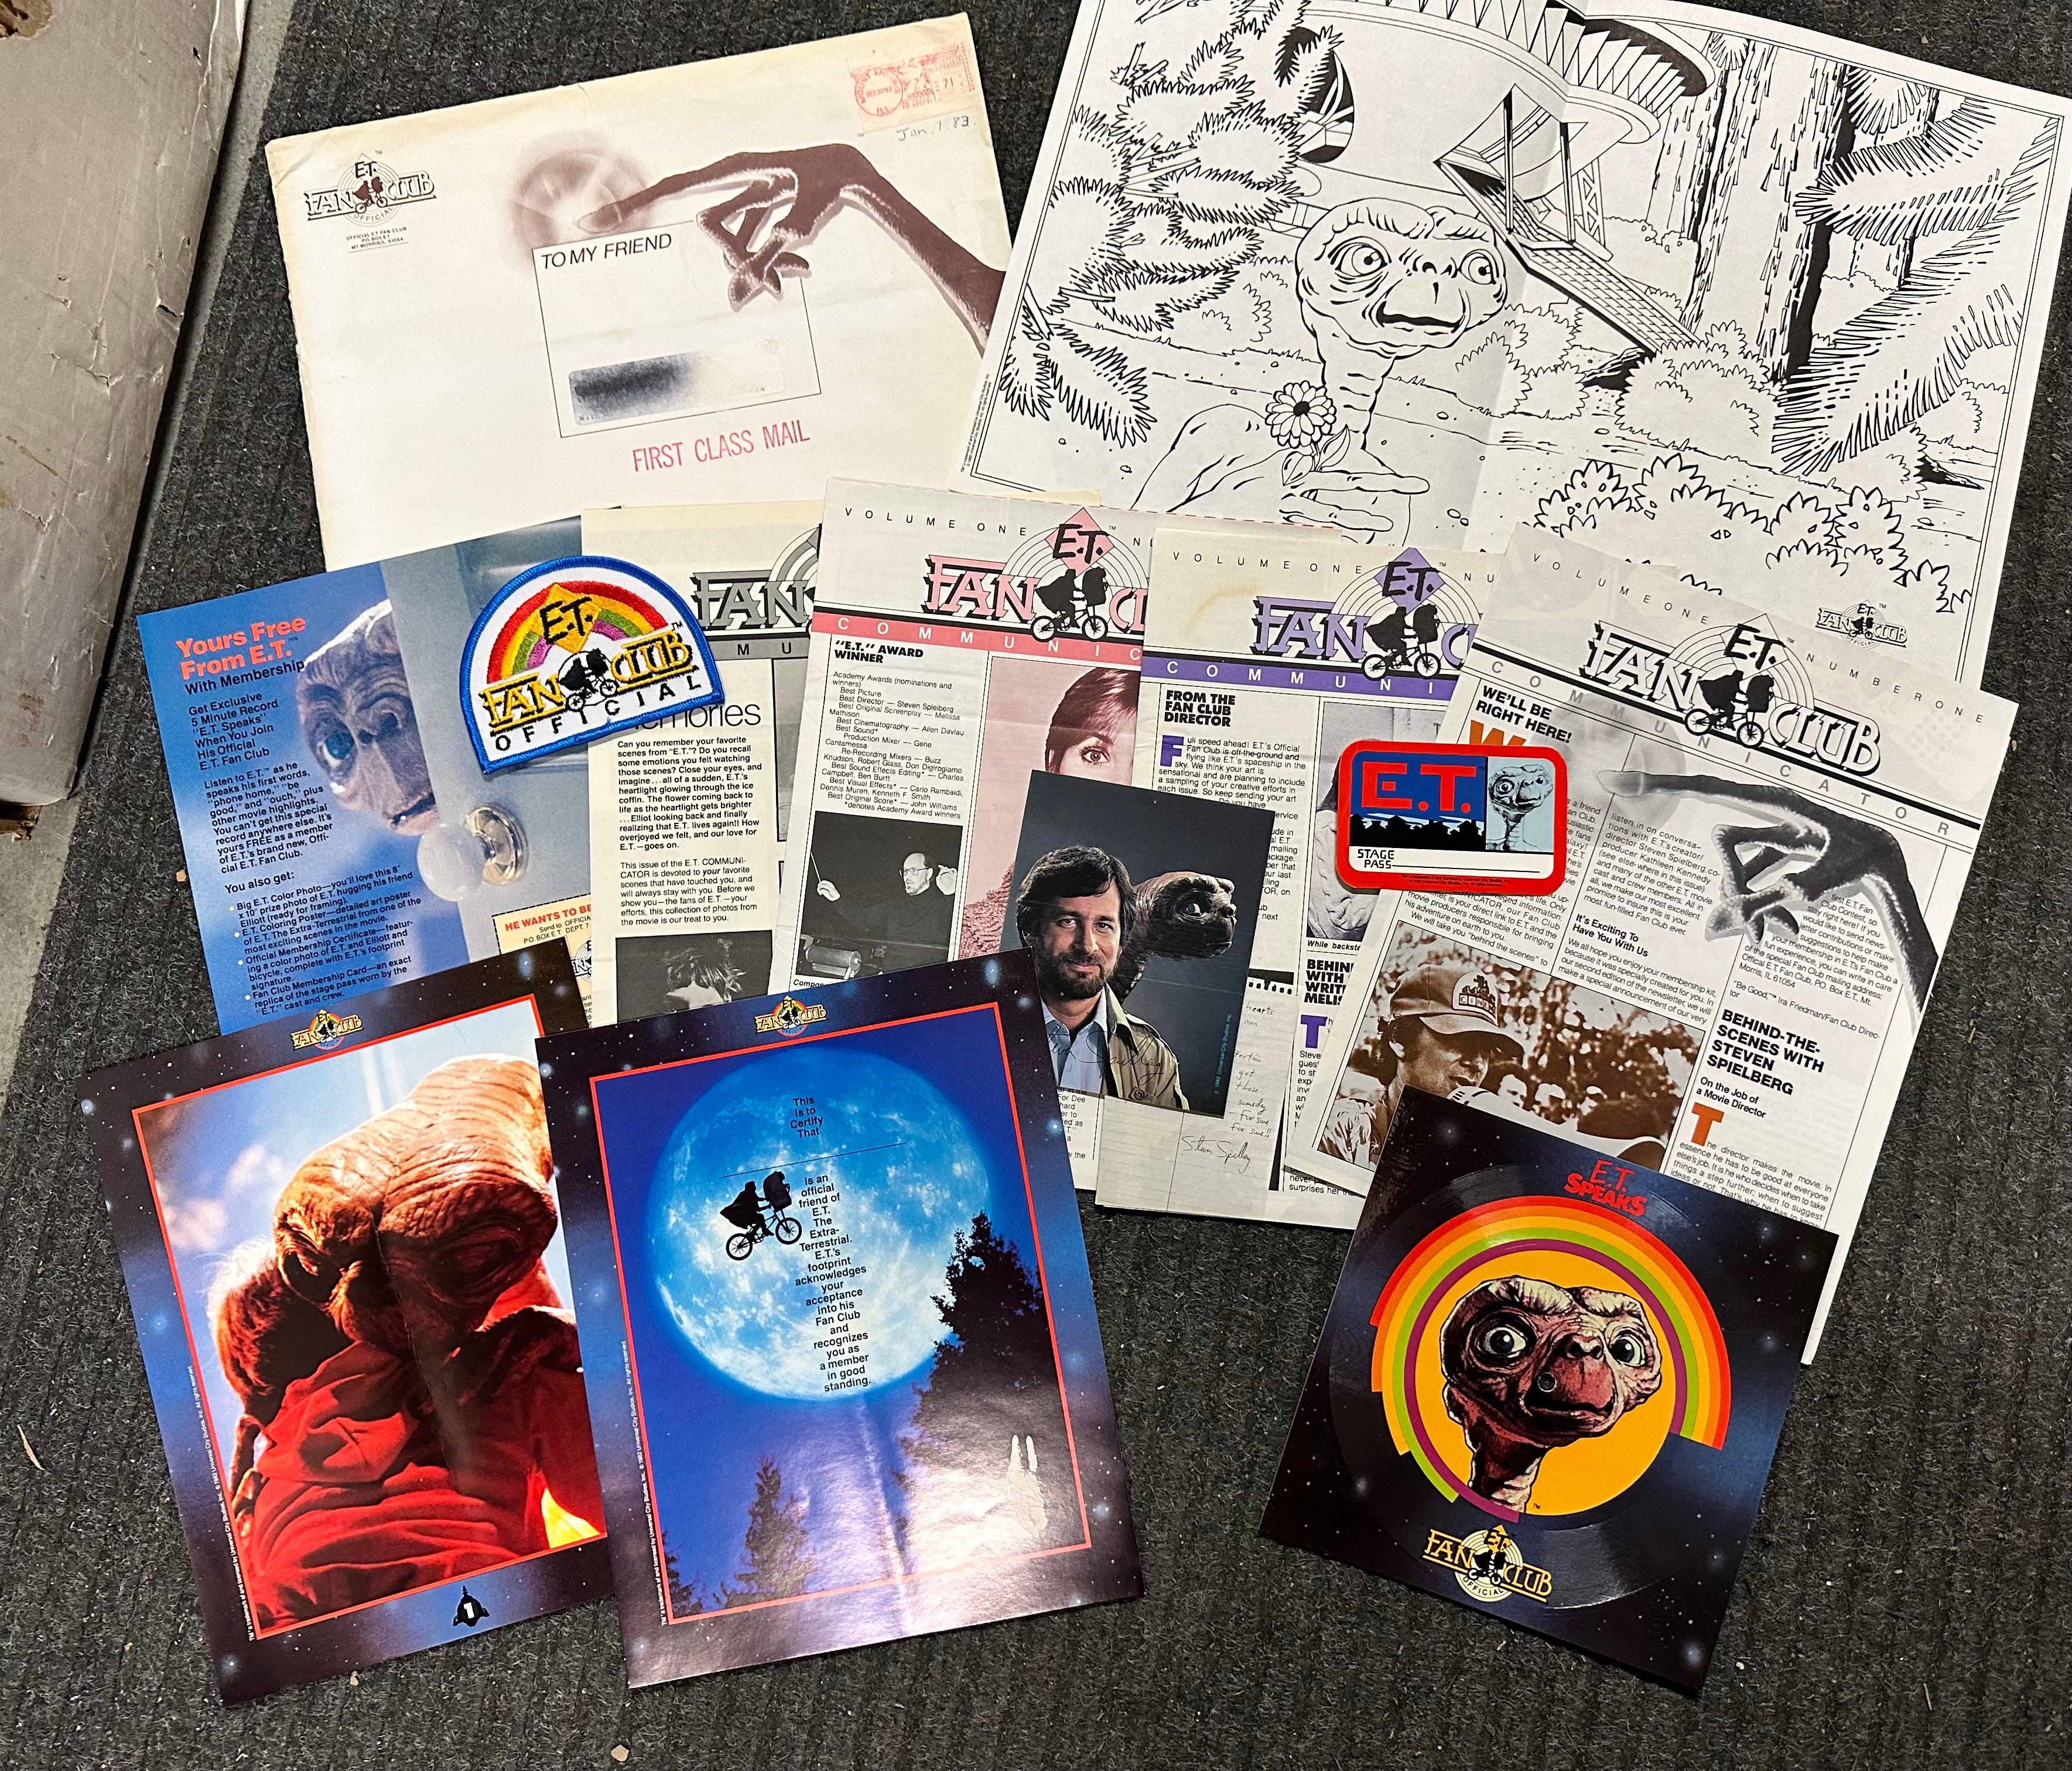 E.T. Fan club movie kit 1982-83